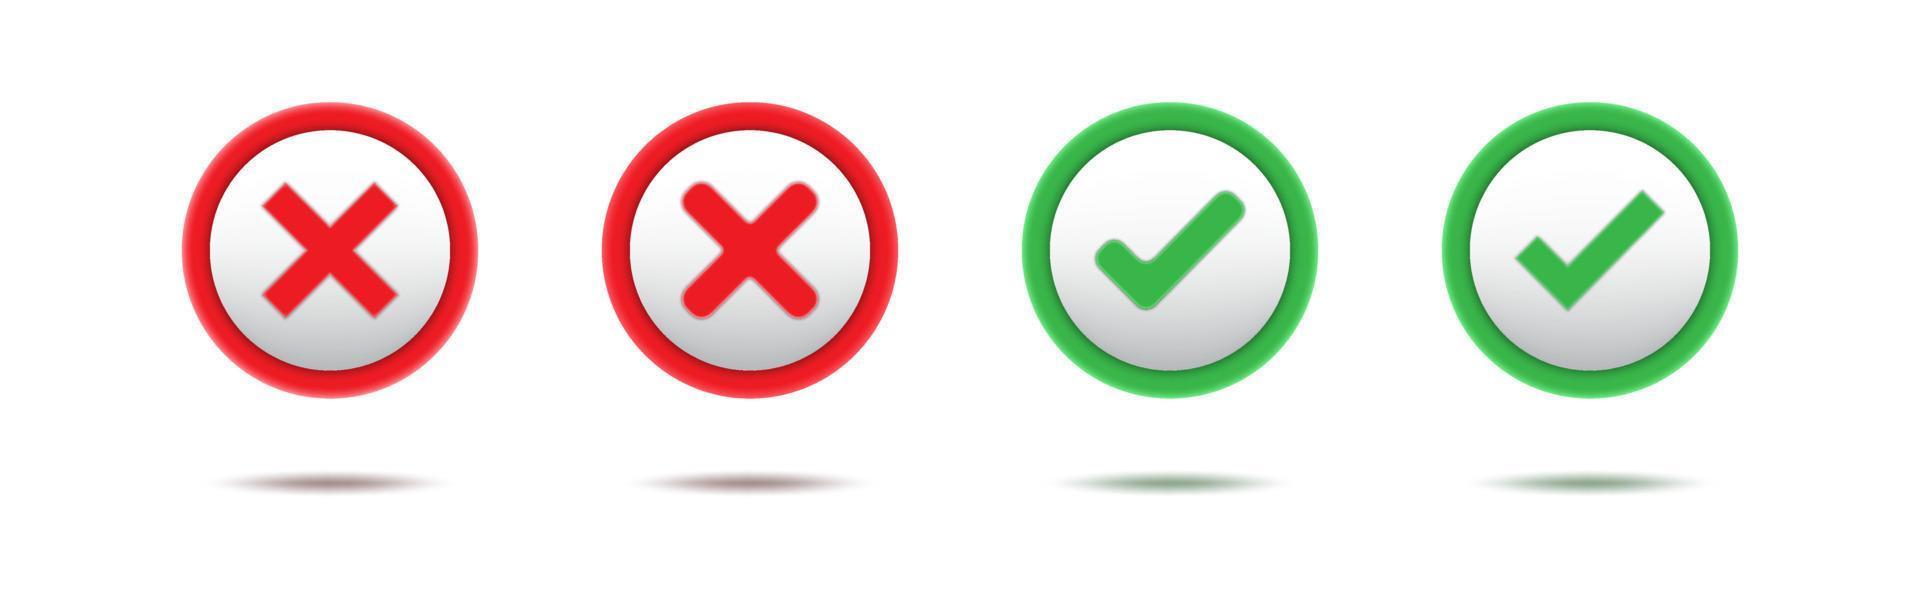 conjunto de marca de seleção verde 3d e cruz vermelha. símbolos de círculo aprovados e rejeitados vetor